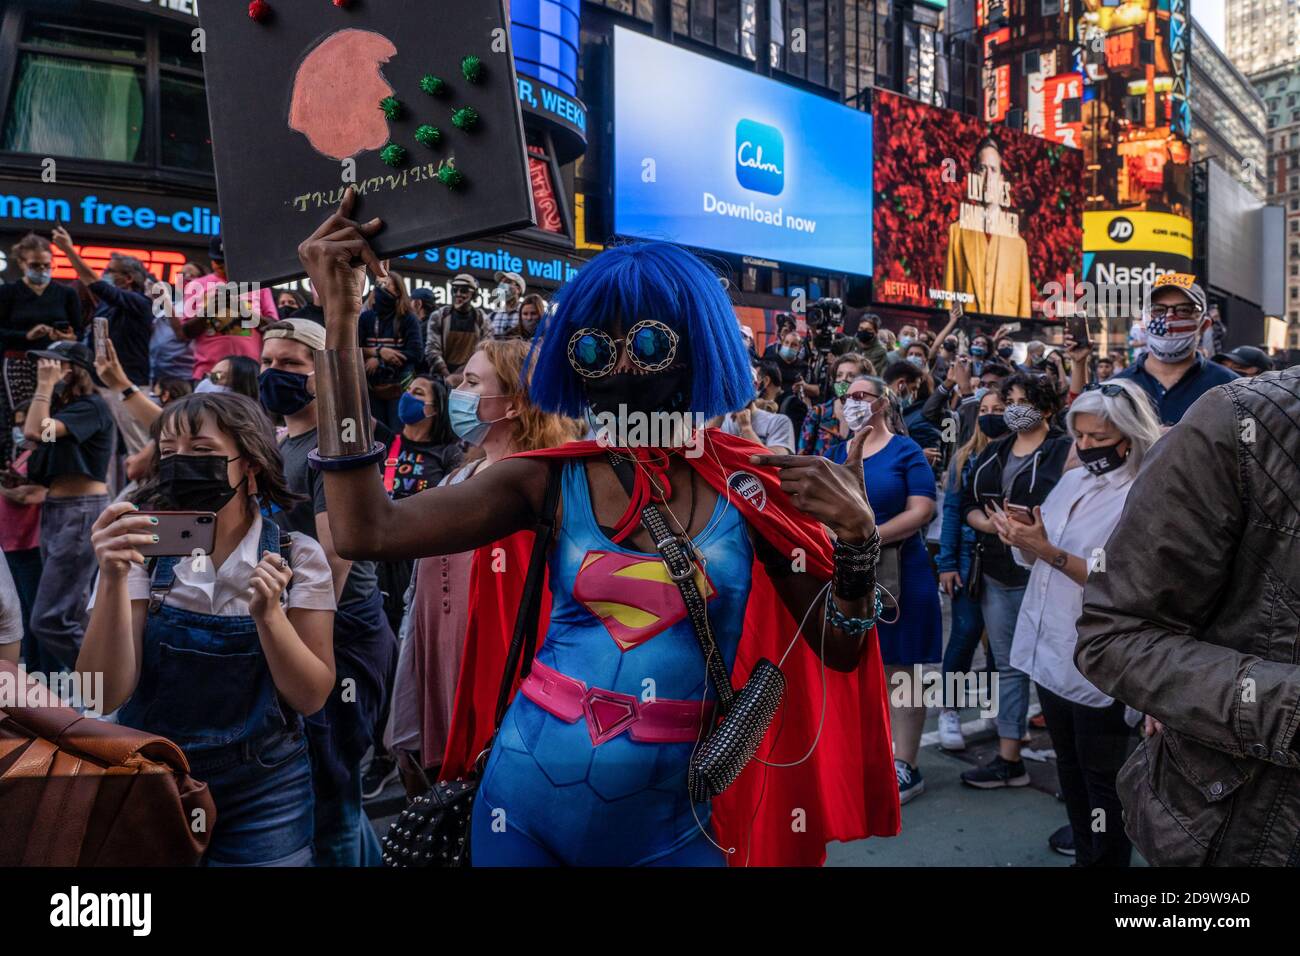 New York, Stati Uniti. 07 novembre 2020. La donna vestita come super-ragazza celebra la vittoria di elezione del biglietto di Biden/Harris a Times Square. La gente è scese in strada in massa dopo che molti dei principali media hanno chiamato l'elezione per l'ex vice presidente Joe Biden. Rapporto NYPD ci è una gamma di 500 - 900 persone radunate in Times Square. Gruppi simili si sono riuniti nelle strade della città e in tutto il paese. Credit: SOPA Images Limited/Alamy Live News Foto Stock